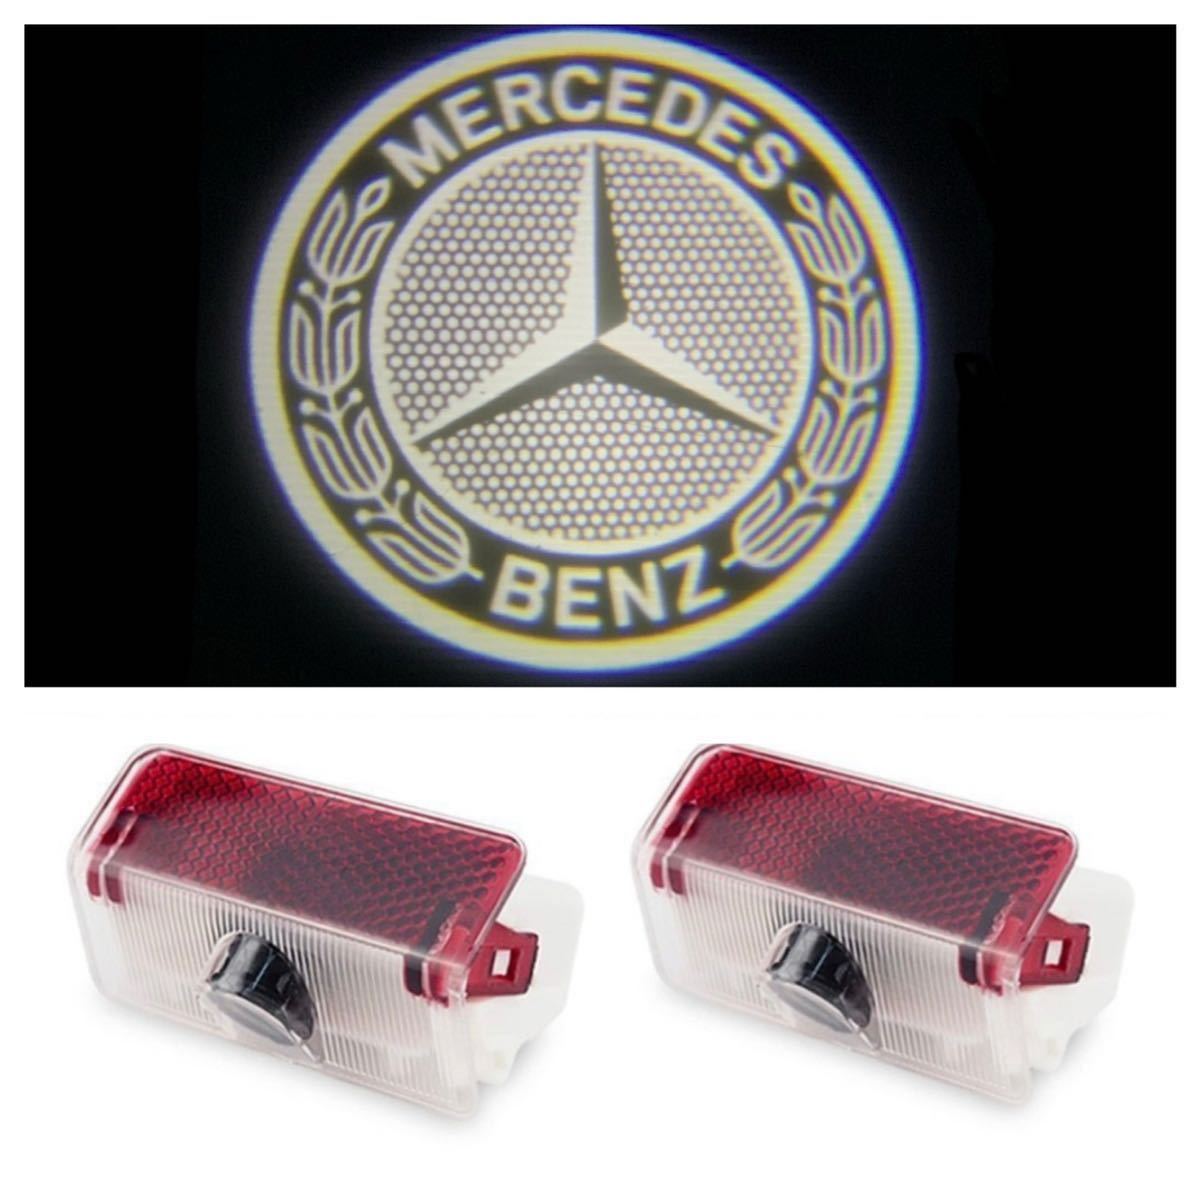 即日出荷 新作入荷 Mercedes Benz ロゴ カーテシランプ LED 純正交換タイプ W169 W245 X204 A B GLK プロジェクタードア ライト ランプ メルセデス ベンツ AMG vzwdezwartekater.be vzwdezwartekater.be